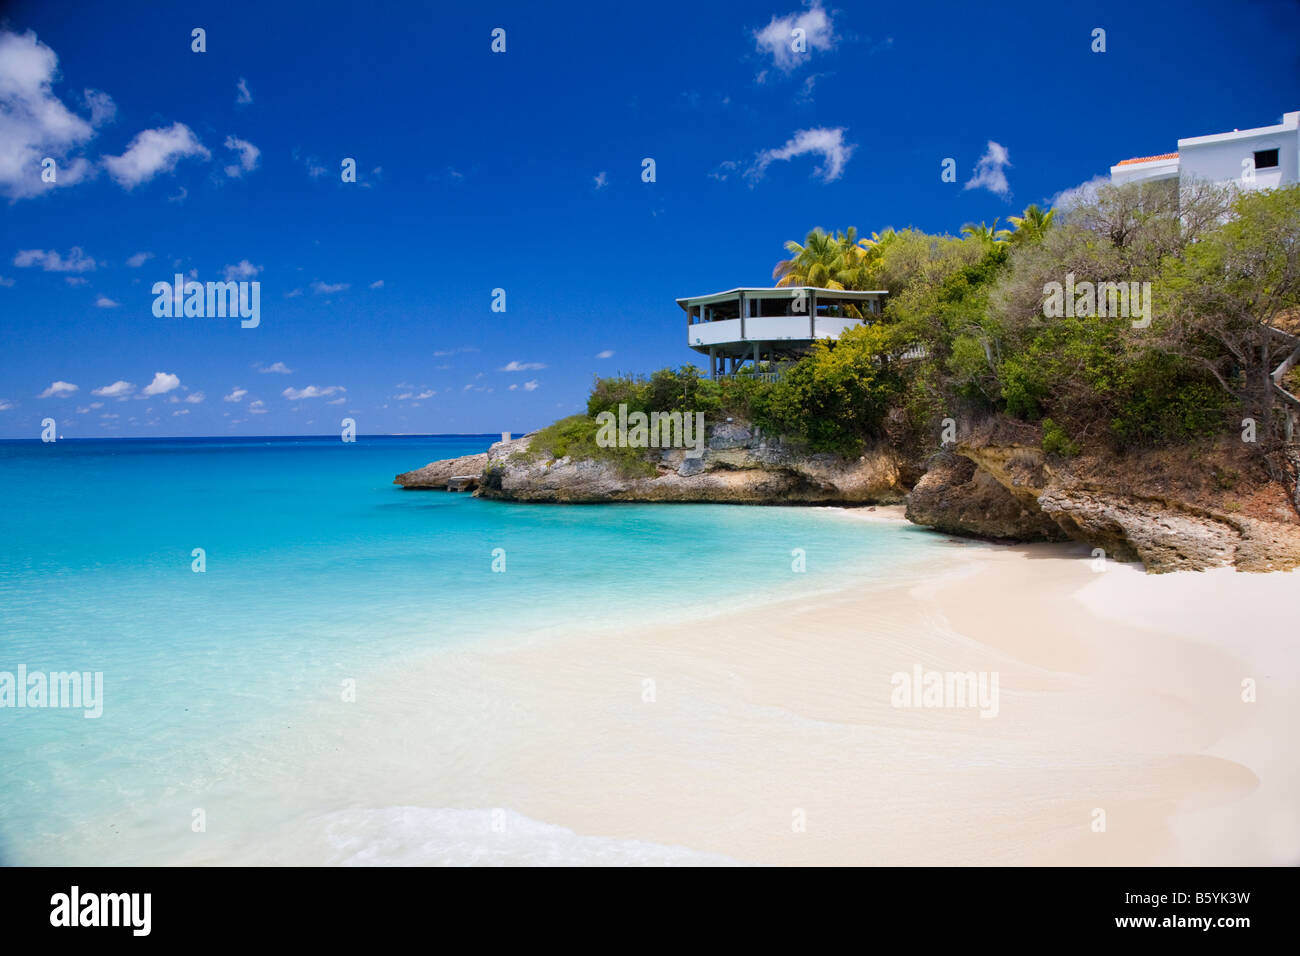 Petite crique et plage sur l'île d'anguilla dans les Antilles Britanniques Banque D'Images